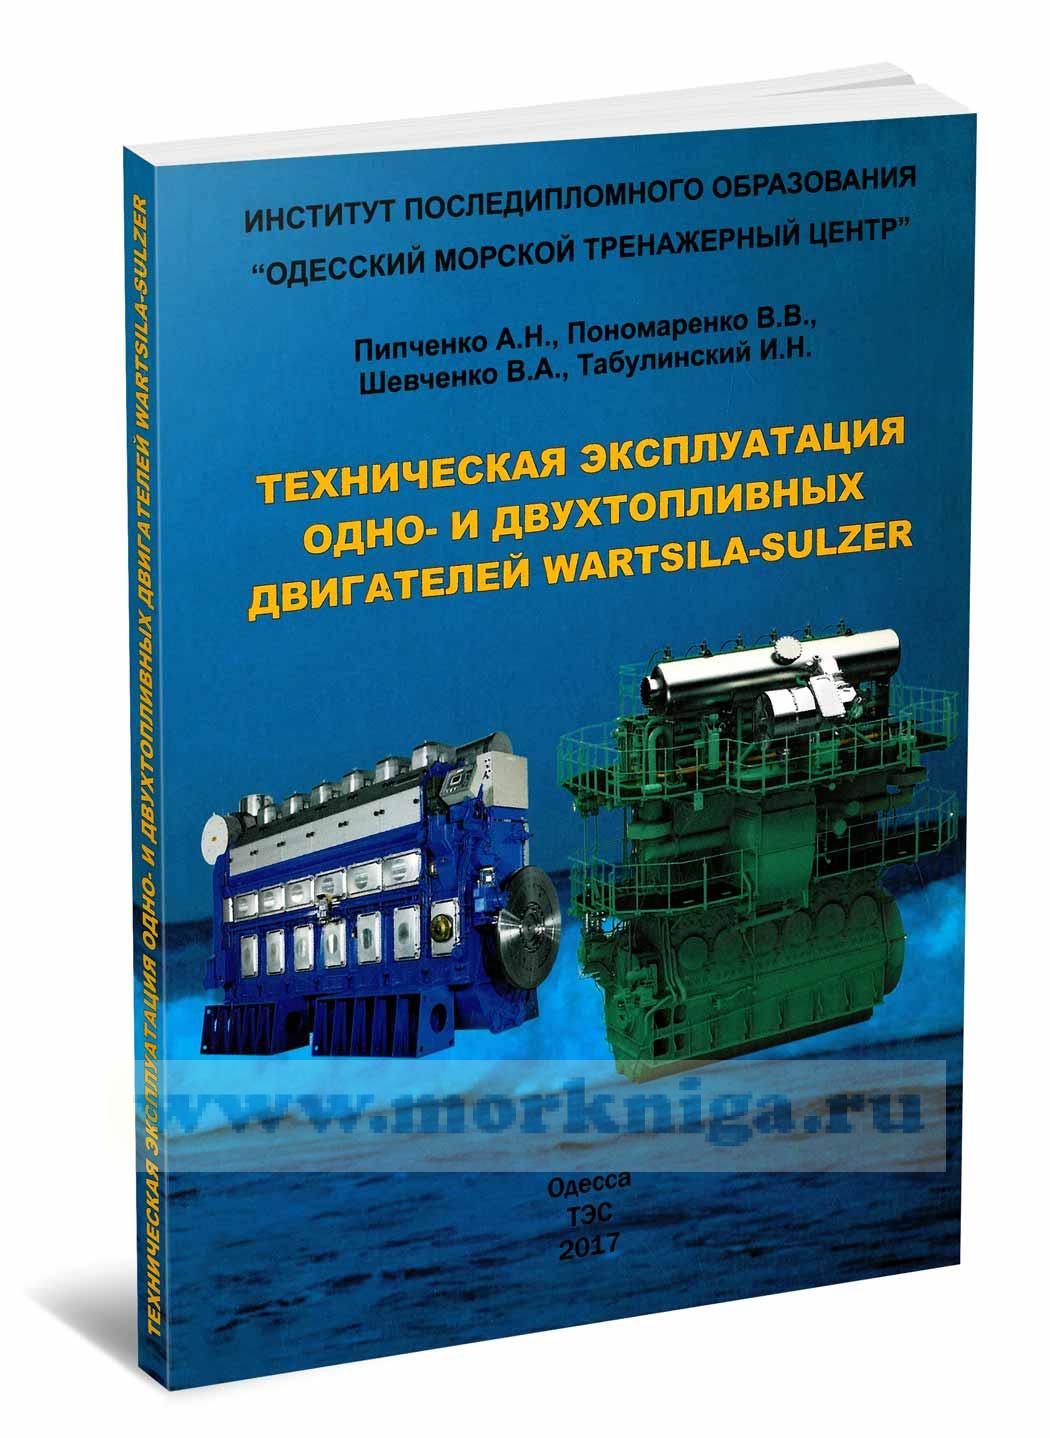 Техническая эксплуатация одно- и двухтопливных двигателей Wartsila-Sulzer: Учебное пособие